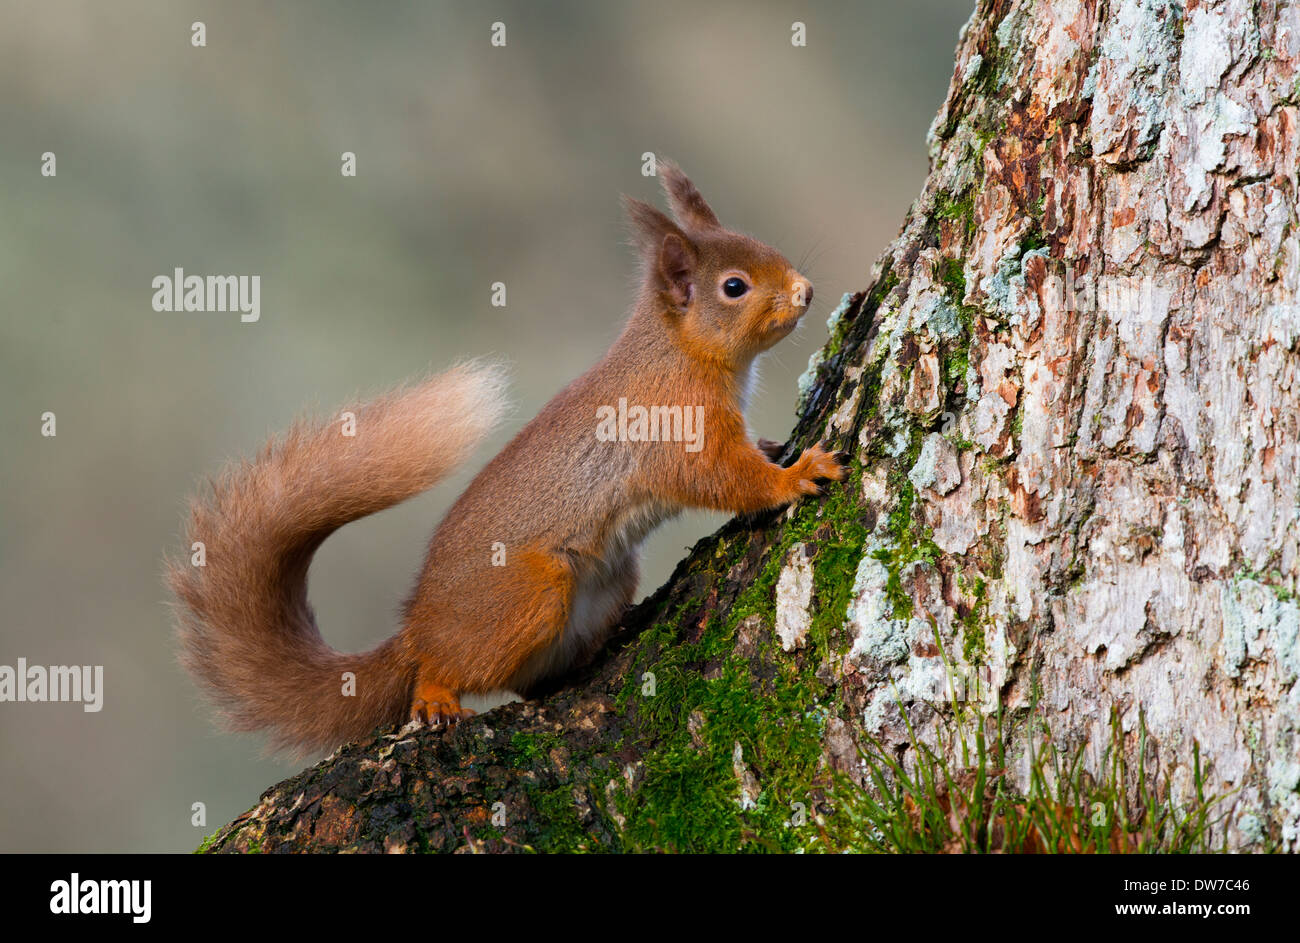 Una ardilla roja de pie en la parte inferior de un tronco de árbol mirando alerta Foto de stock